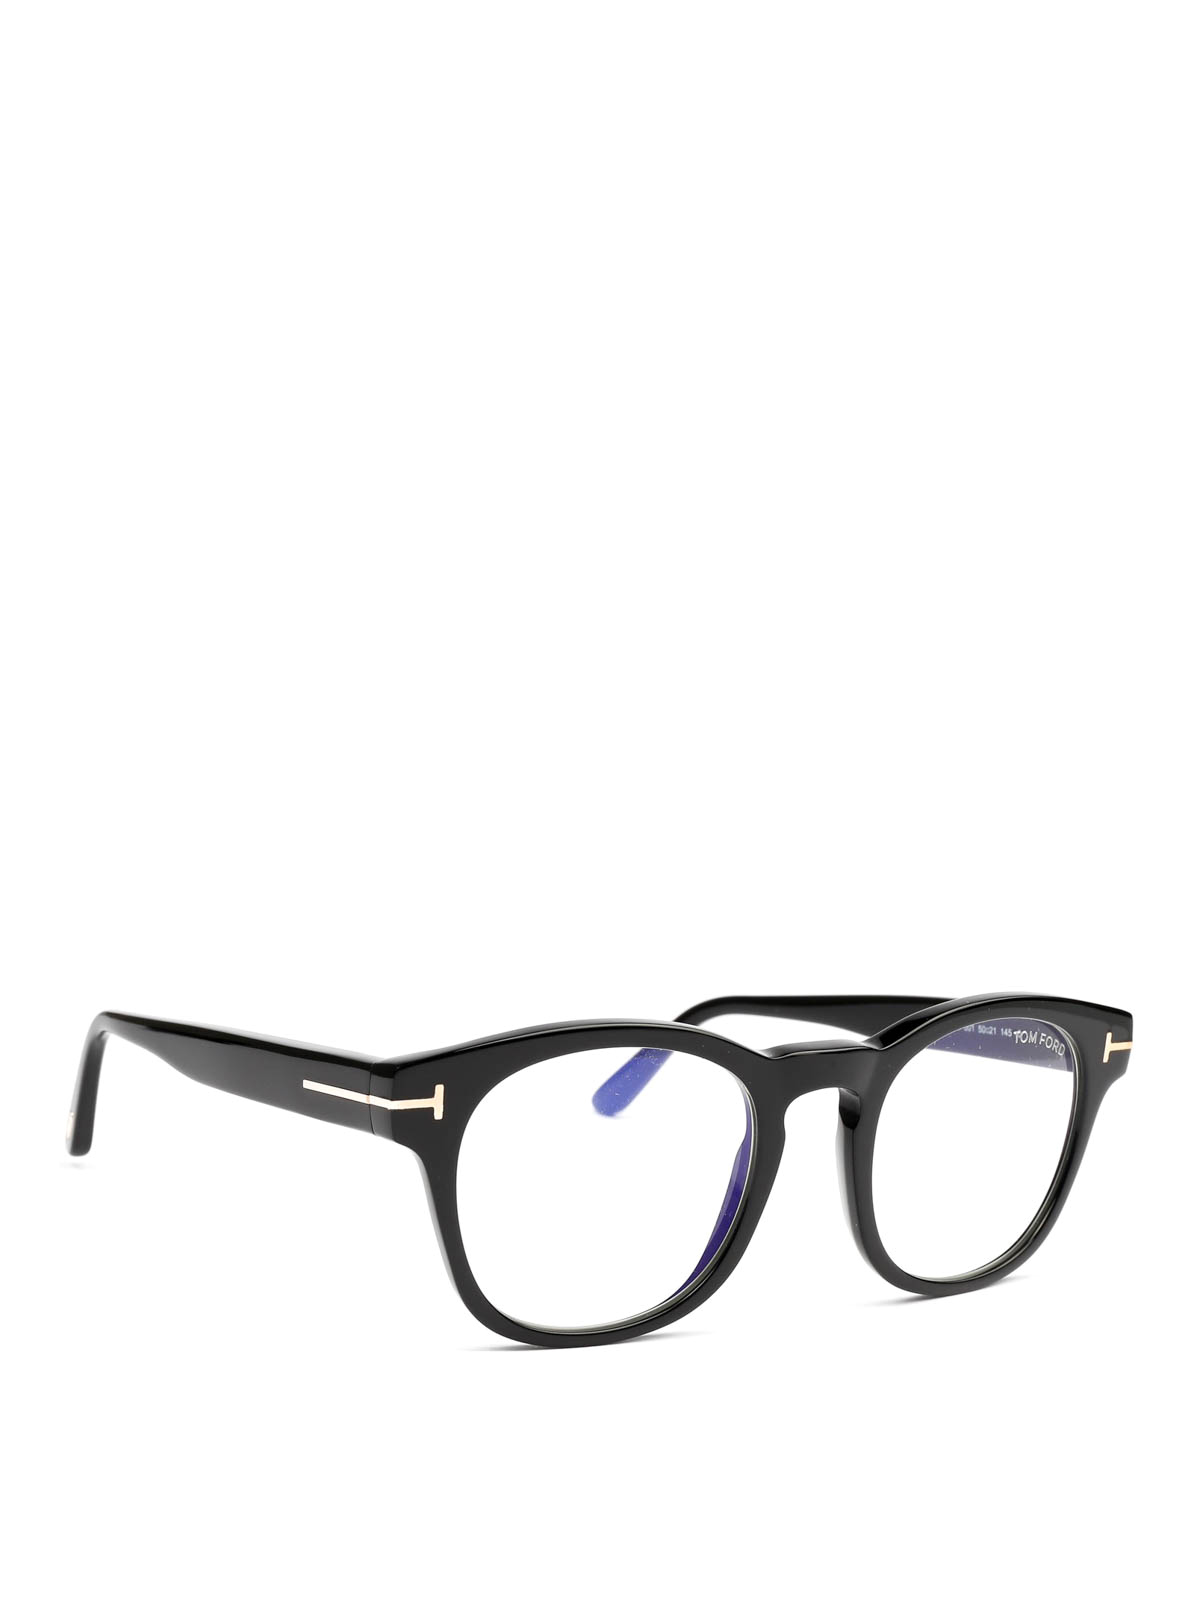 Tom Ford - Black thick round frame glasses - Glasses - FT5543B001